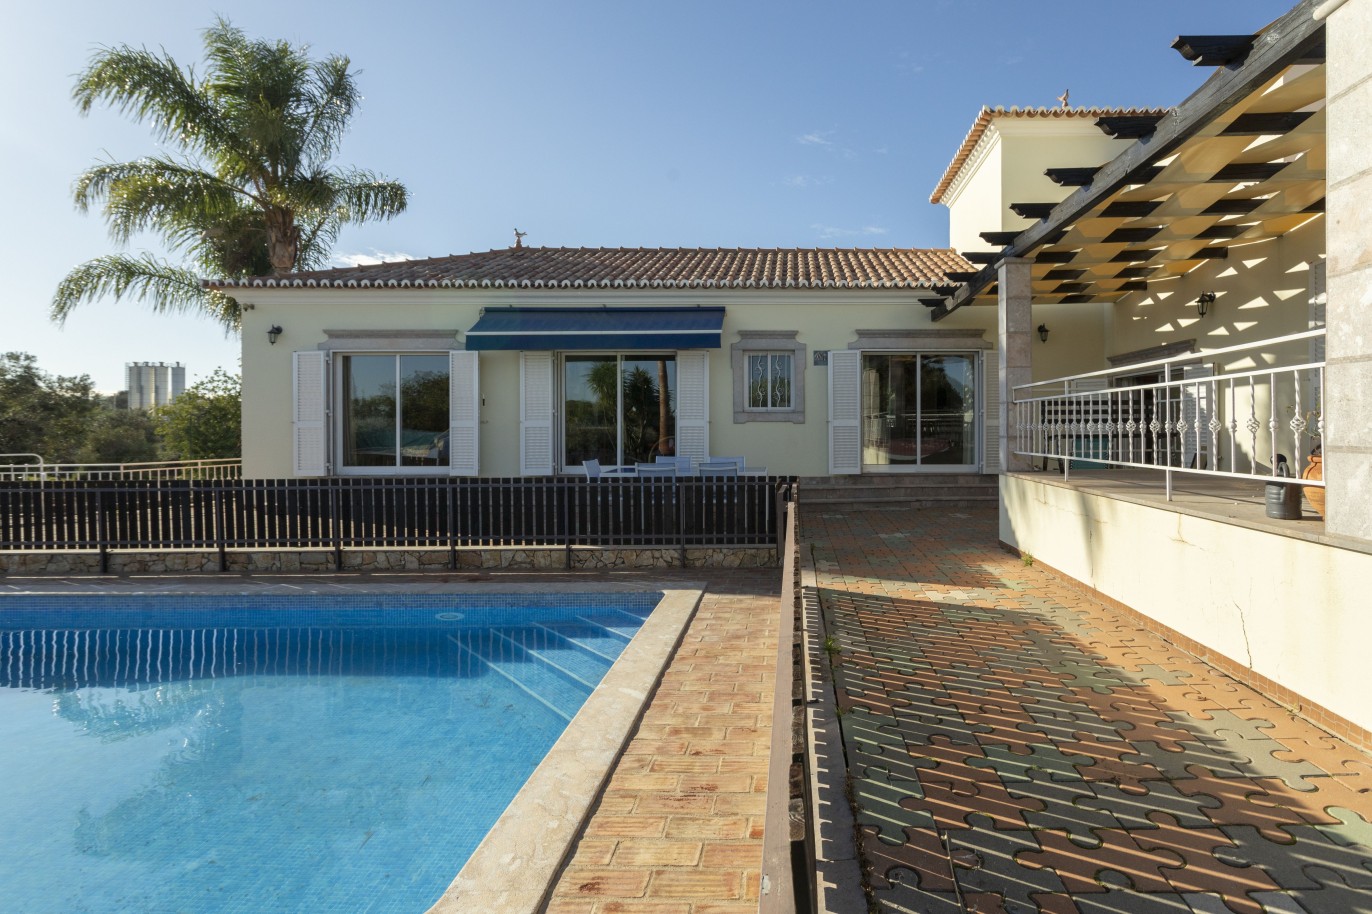 Moradia V4 com piscina, para venda em São Brás de Alportel, Algarve_245030